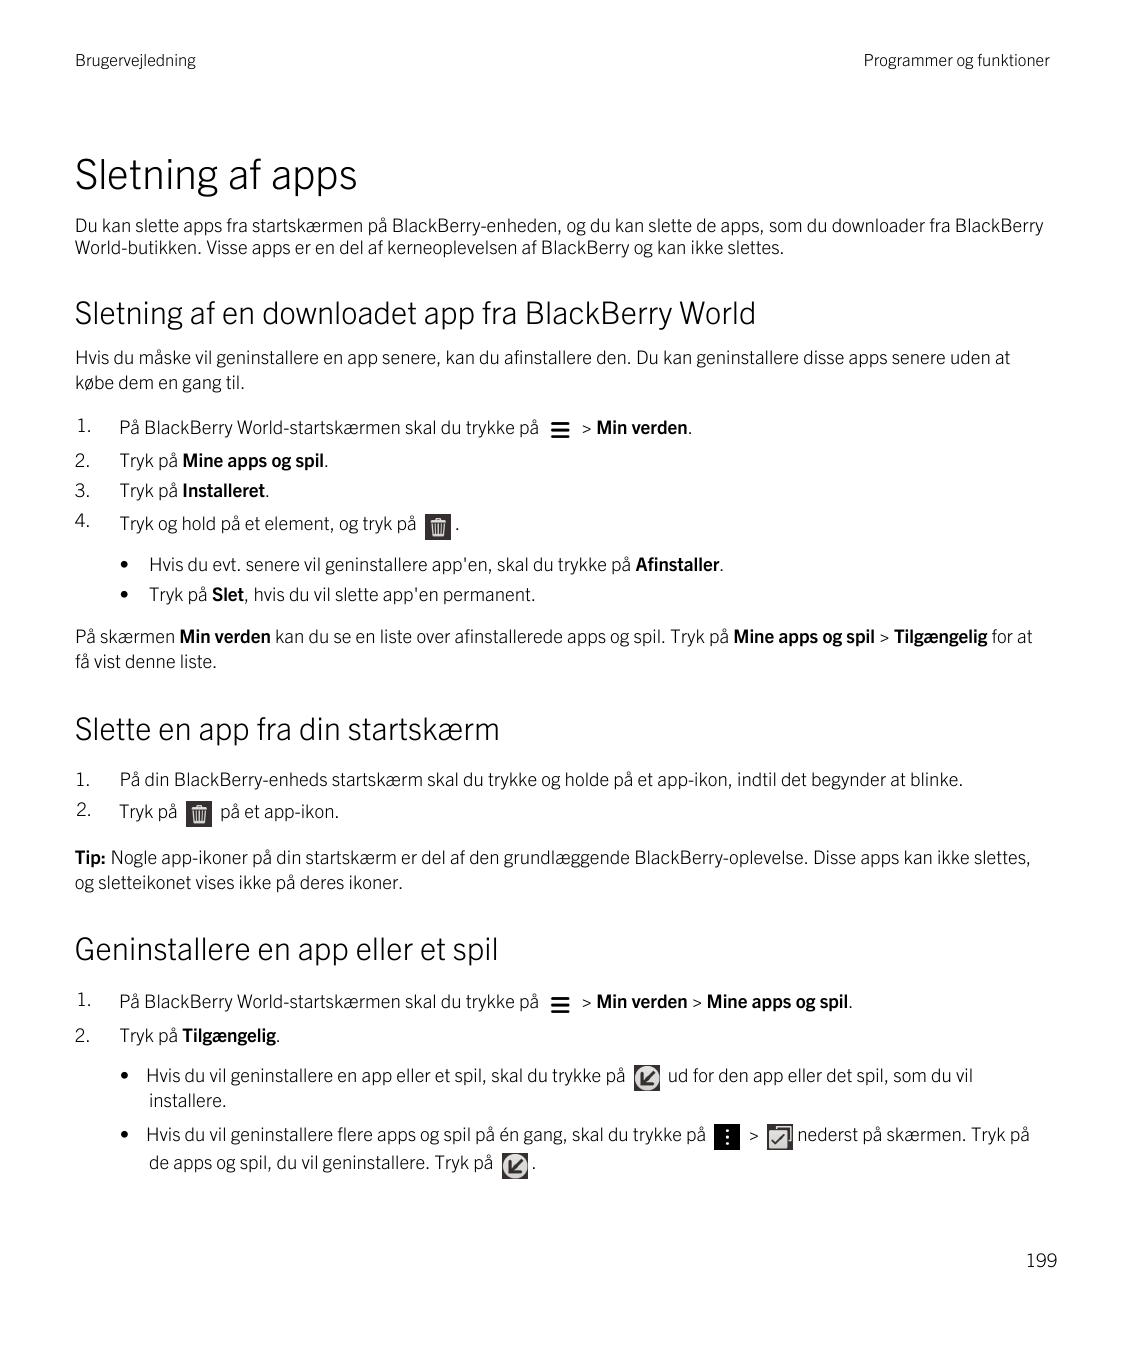 BrugervejledningProgrammer og funktionerSletning af appsDu kan slette apps fra startskærmen på BlackBerry-enheden, og du kan sle